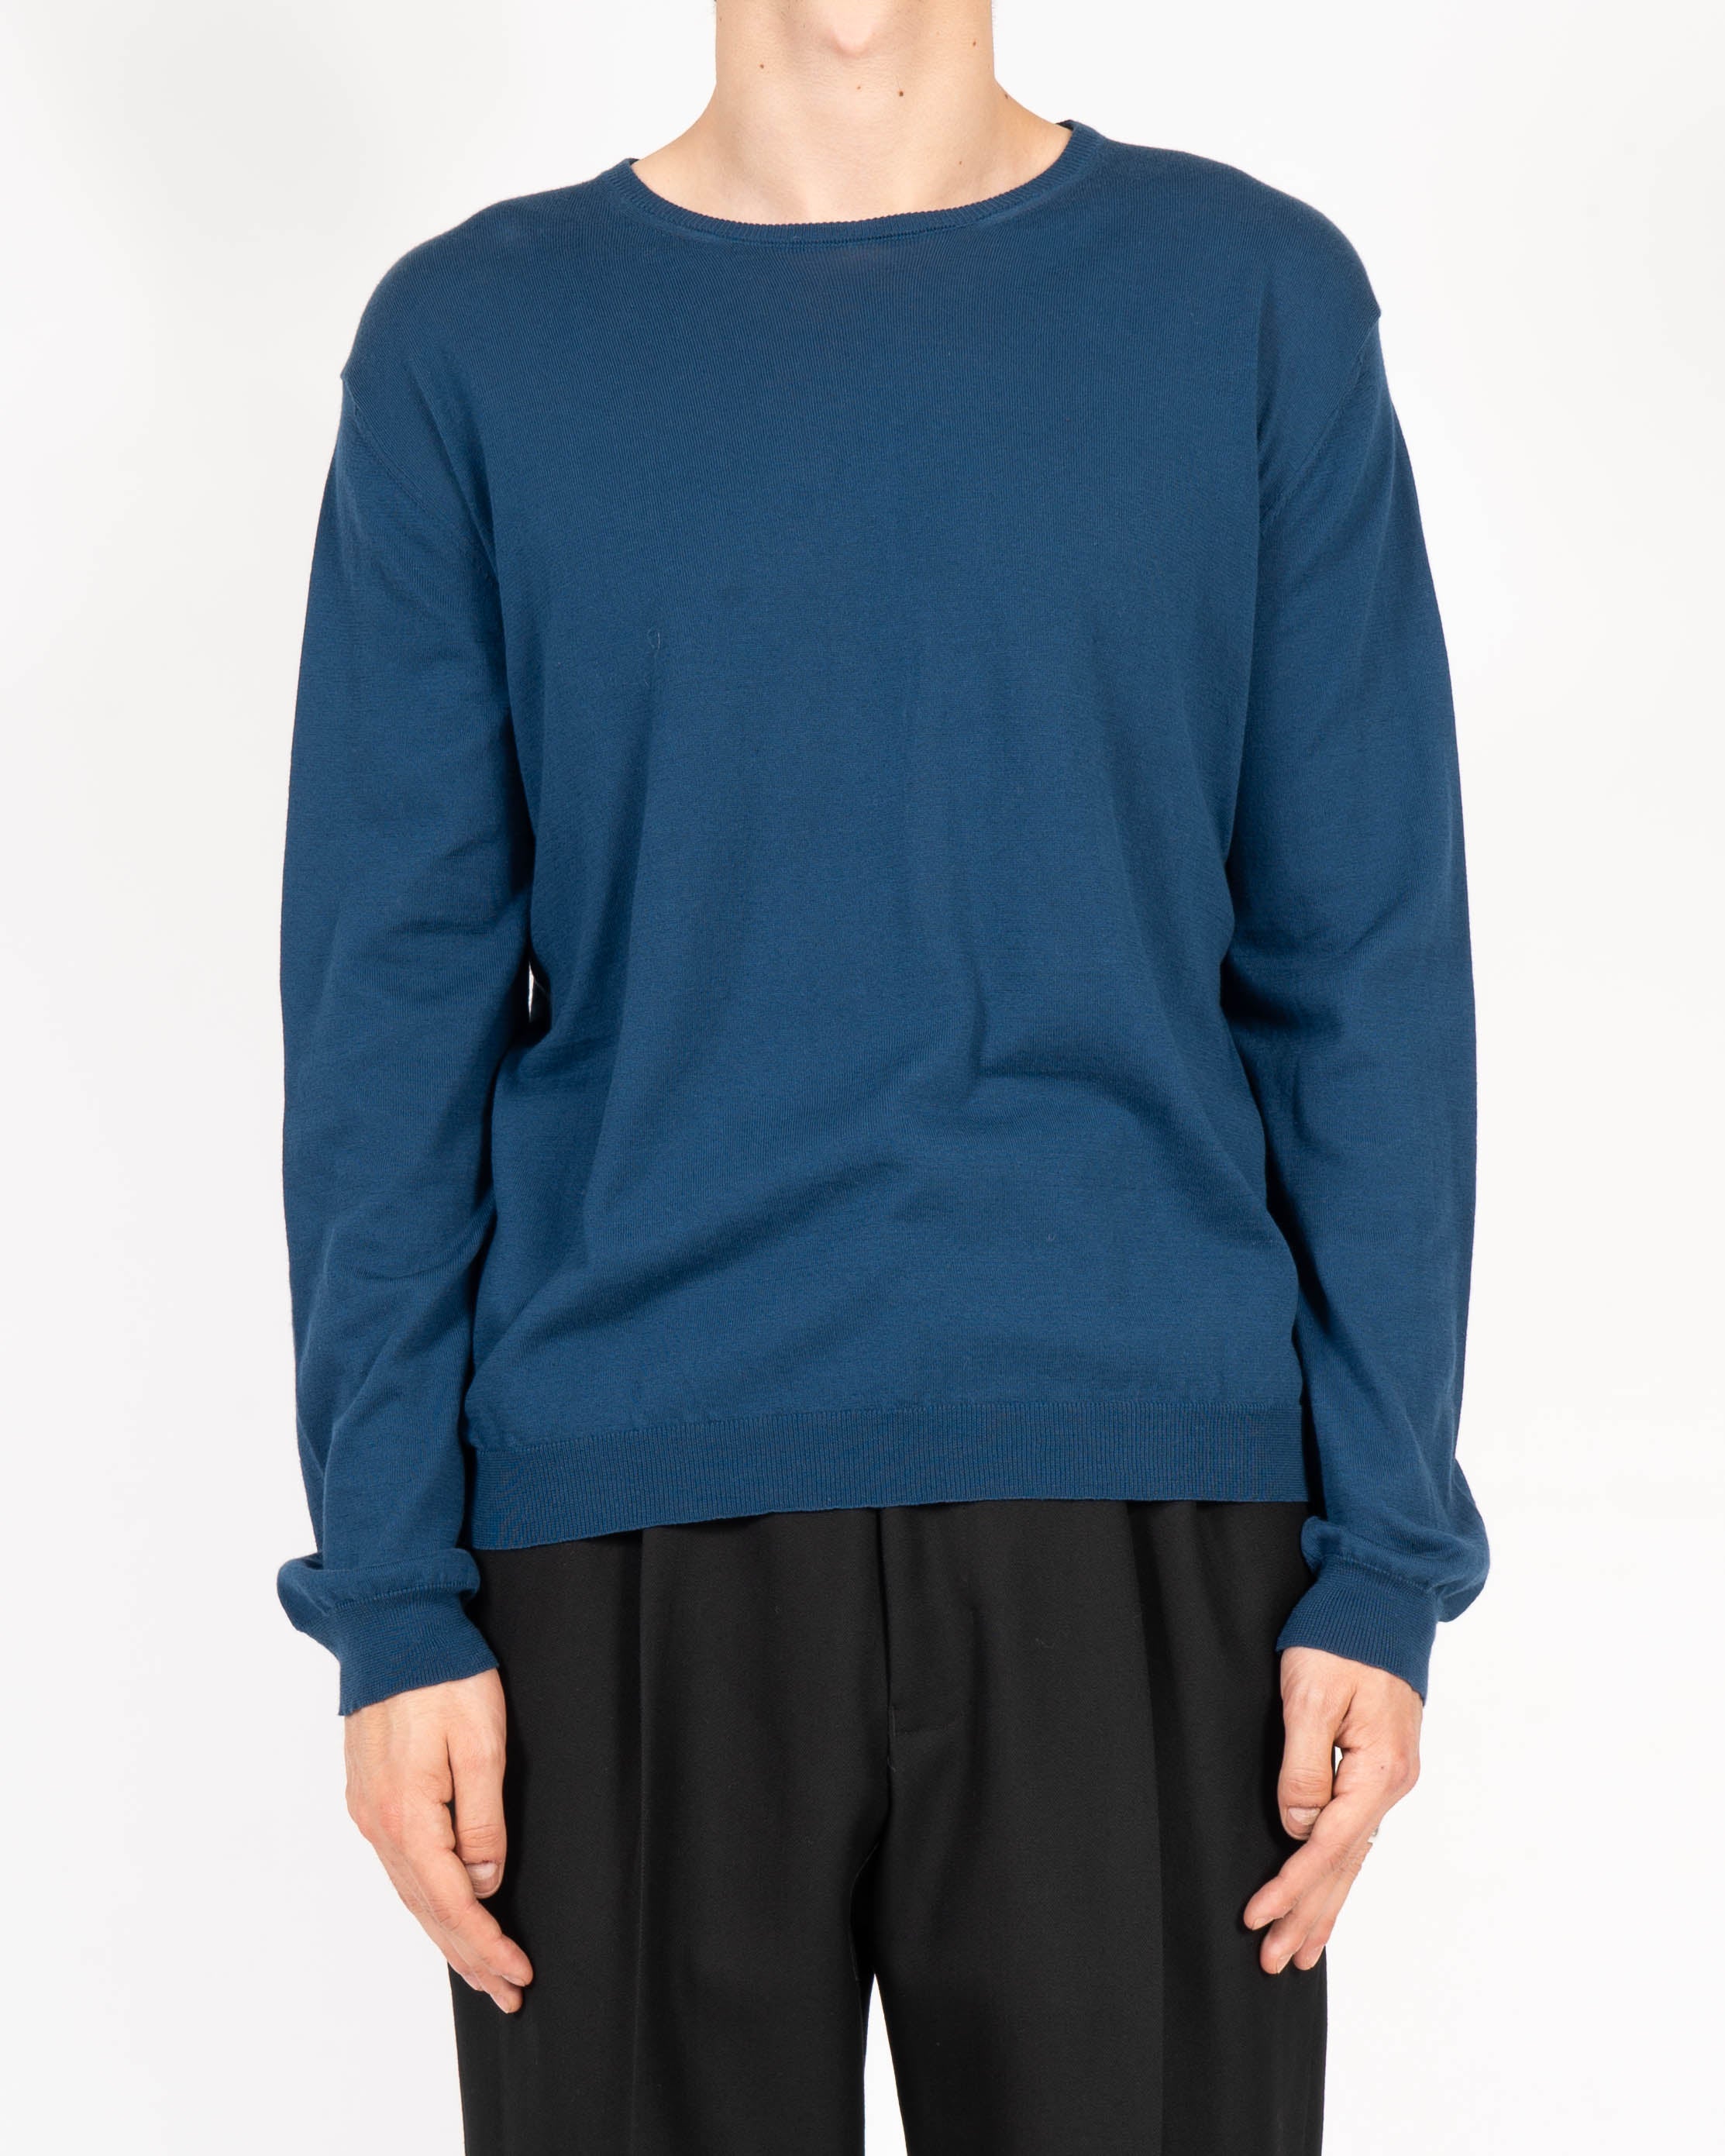 SS16  Knit Sweatshirt  in fine blue Wool